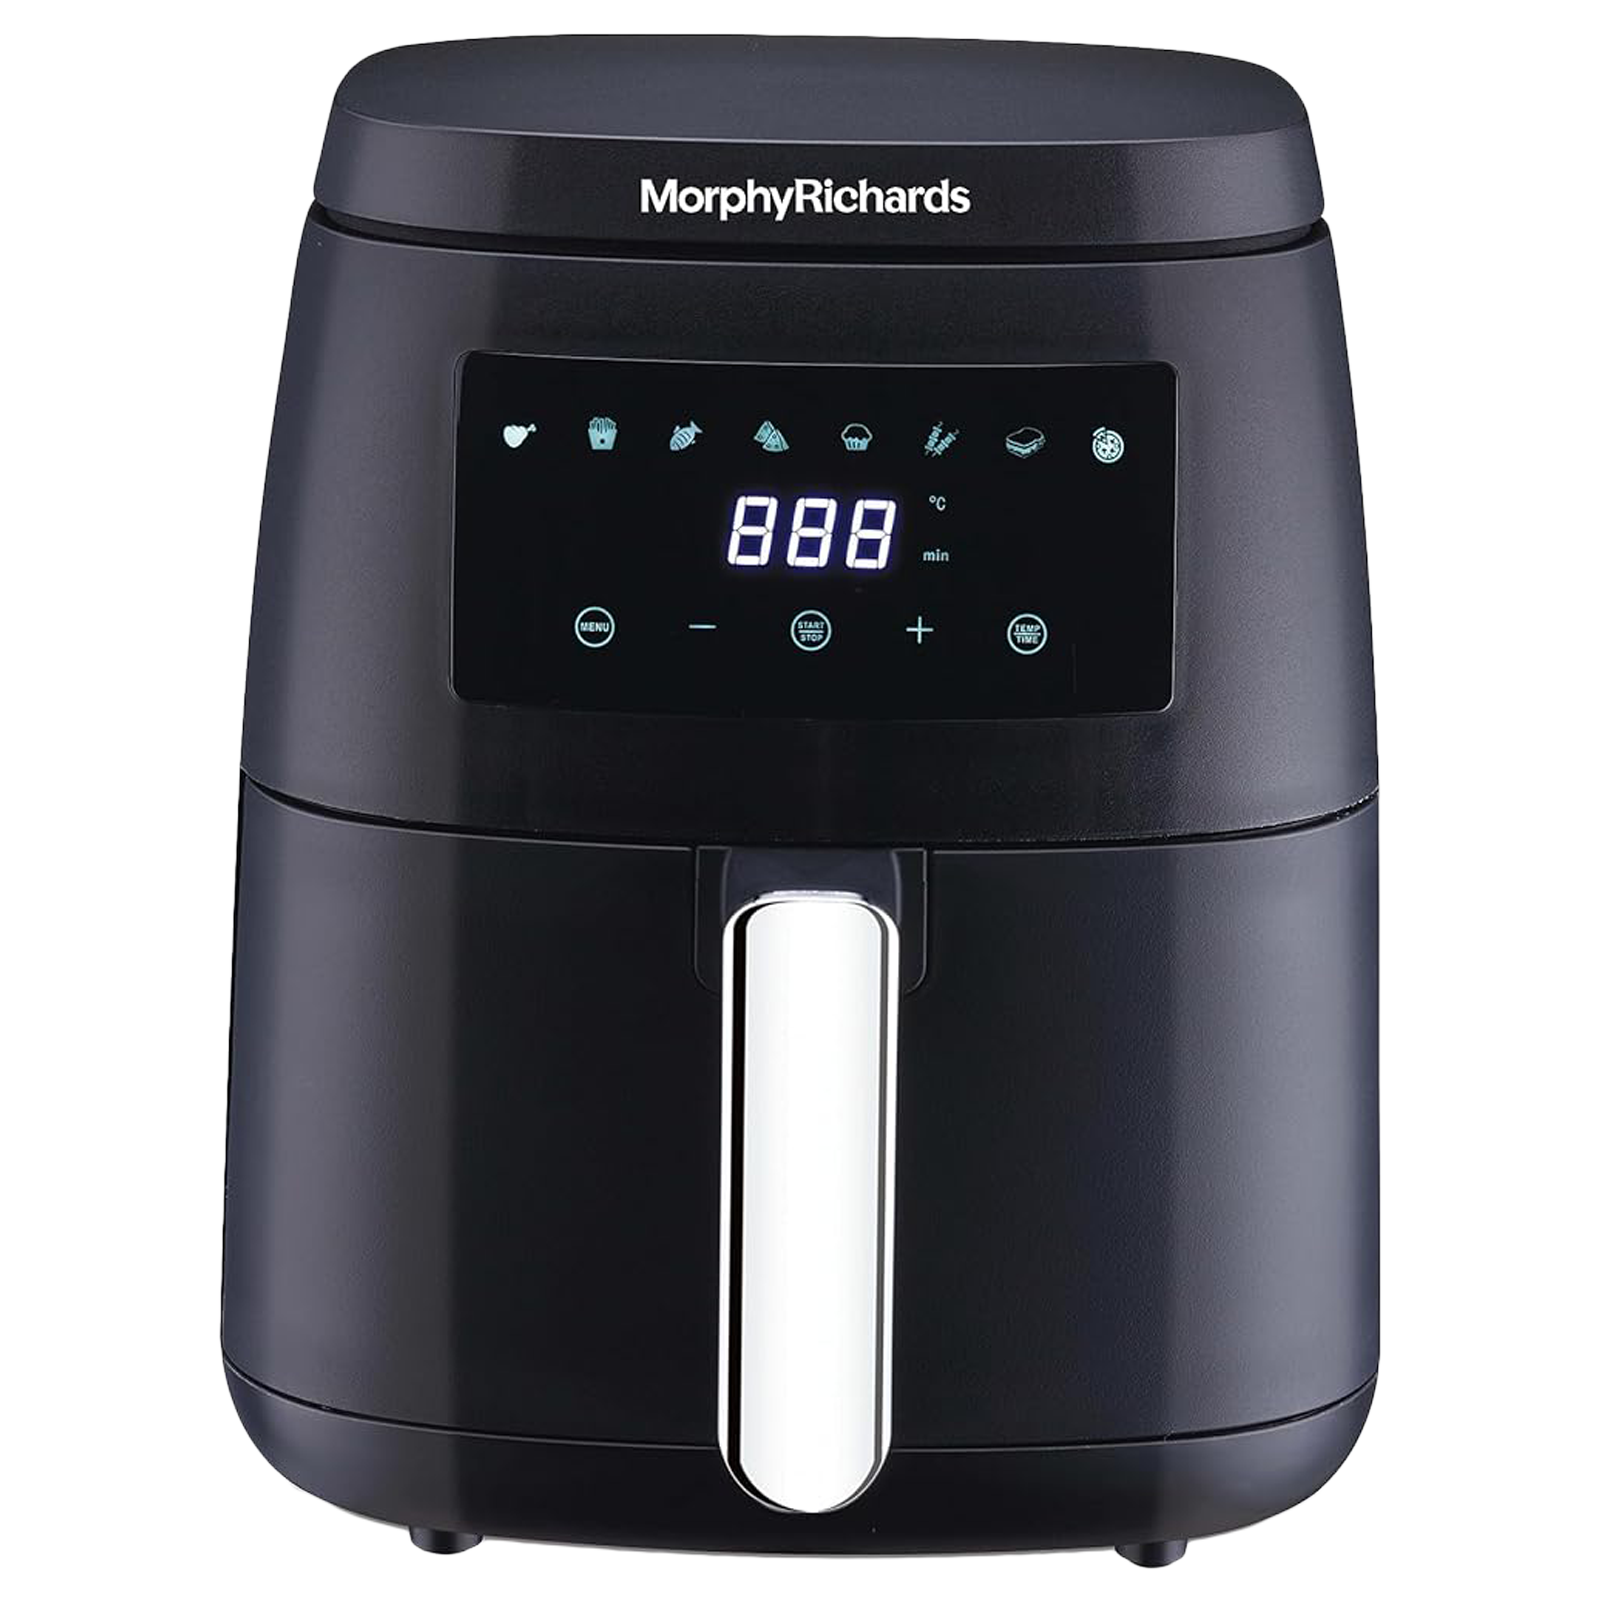 morphy richards 5L 1500 Watt Digital Air Fryer with 8 Preset Menus (Black)